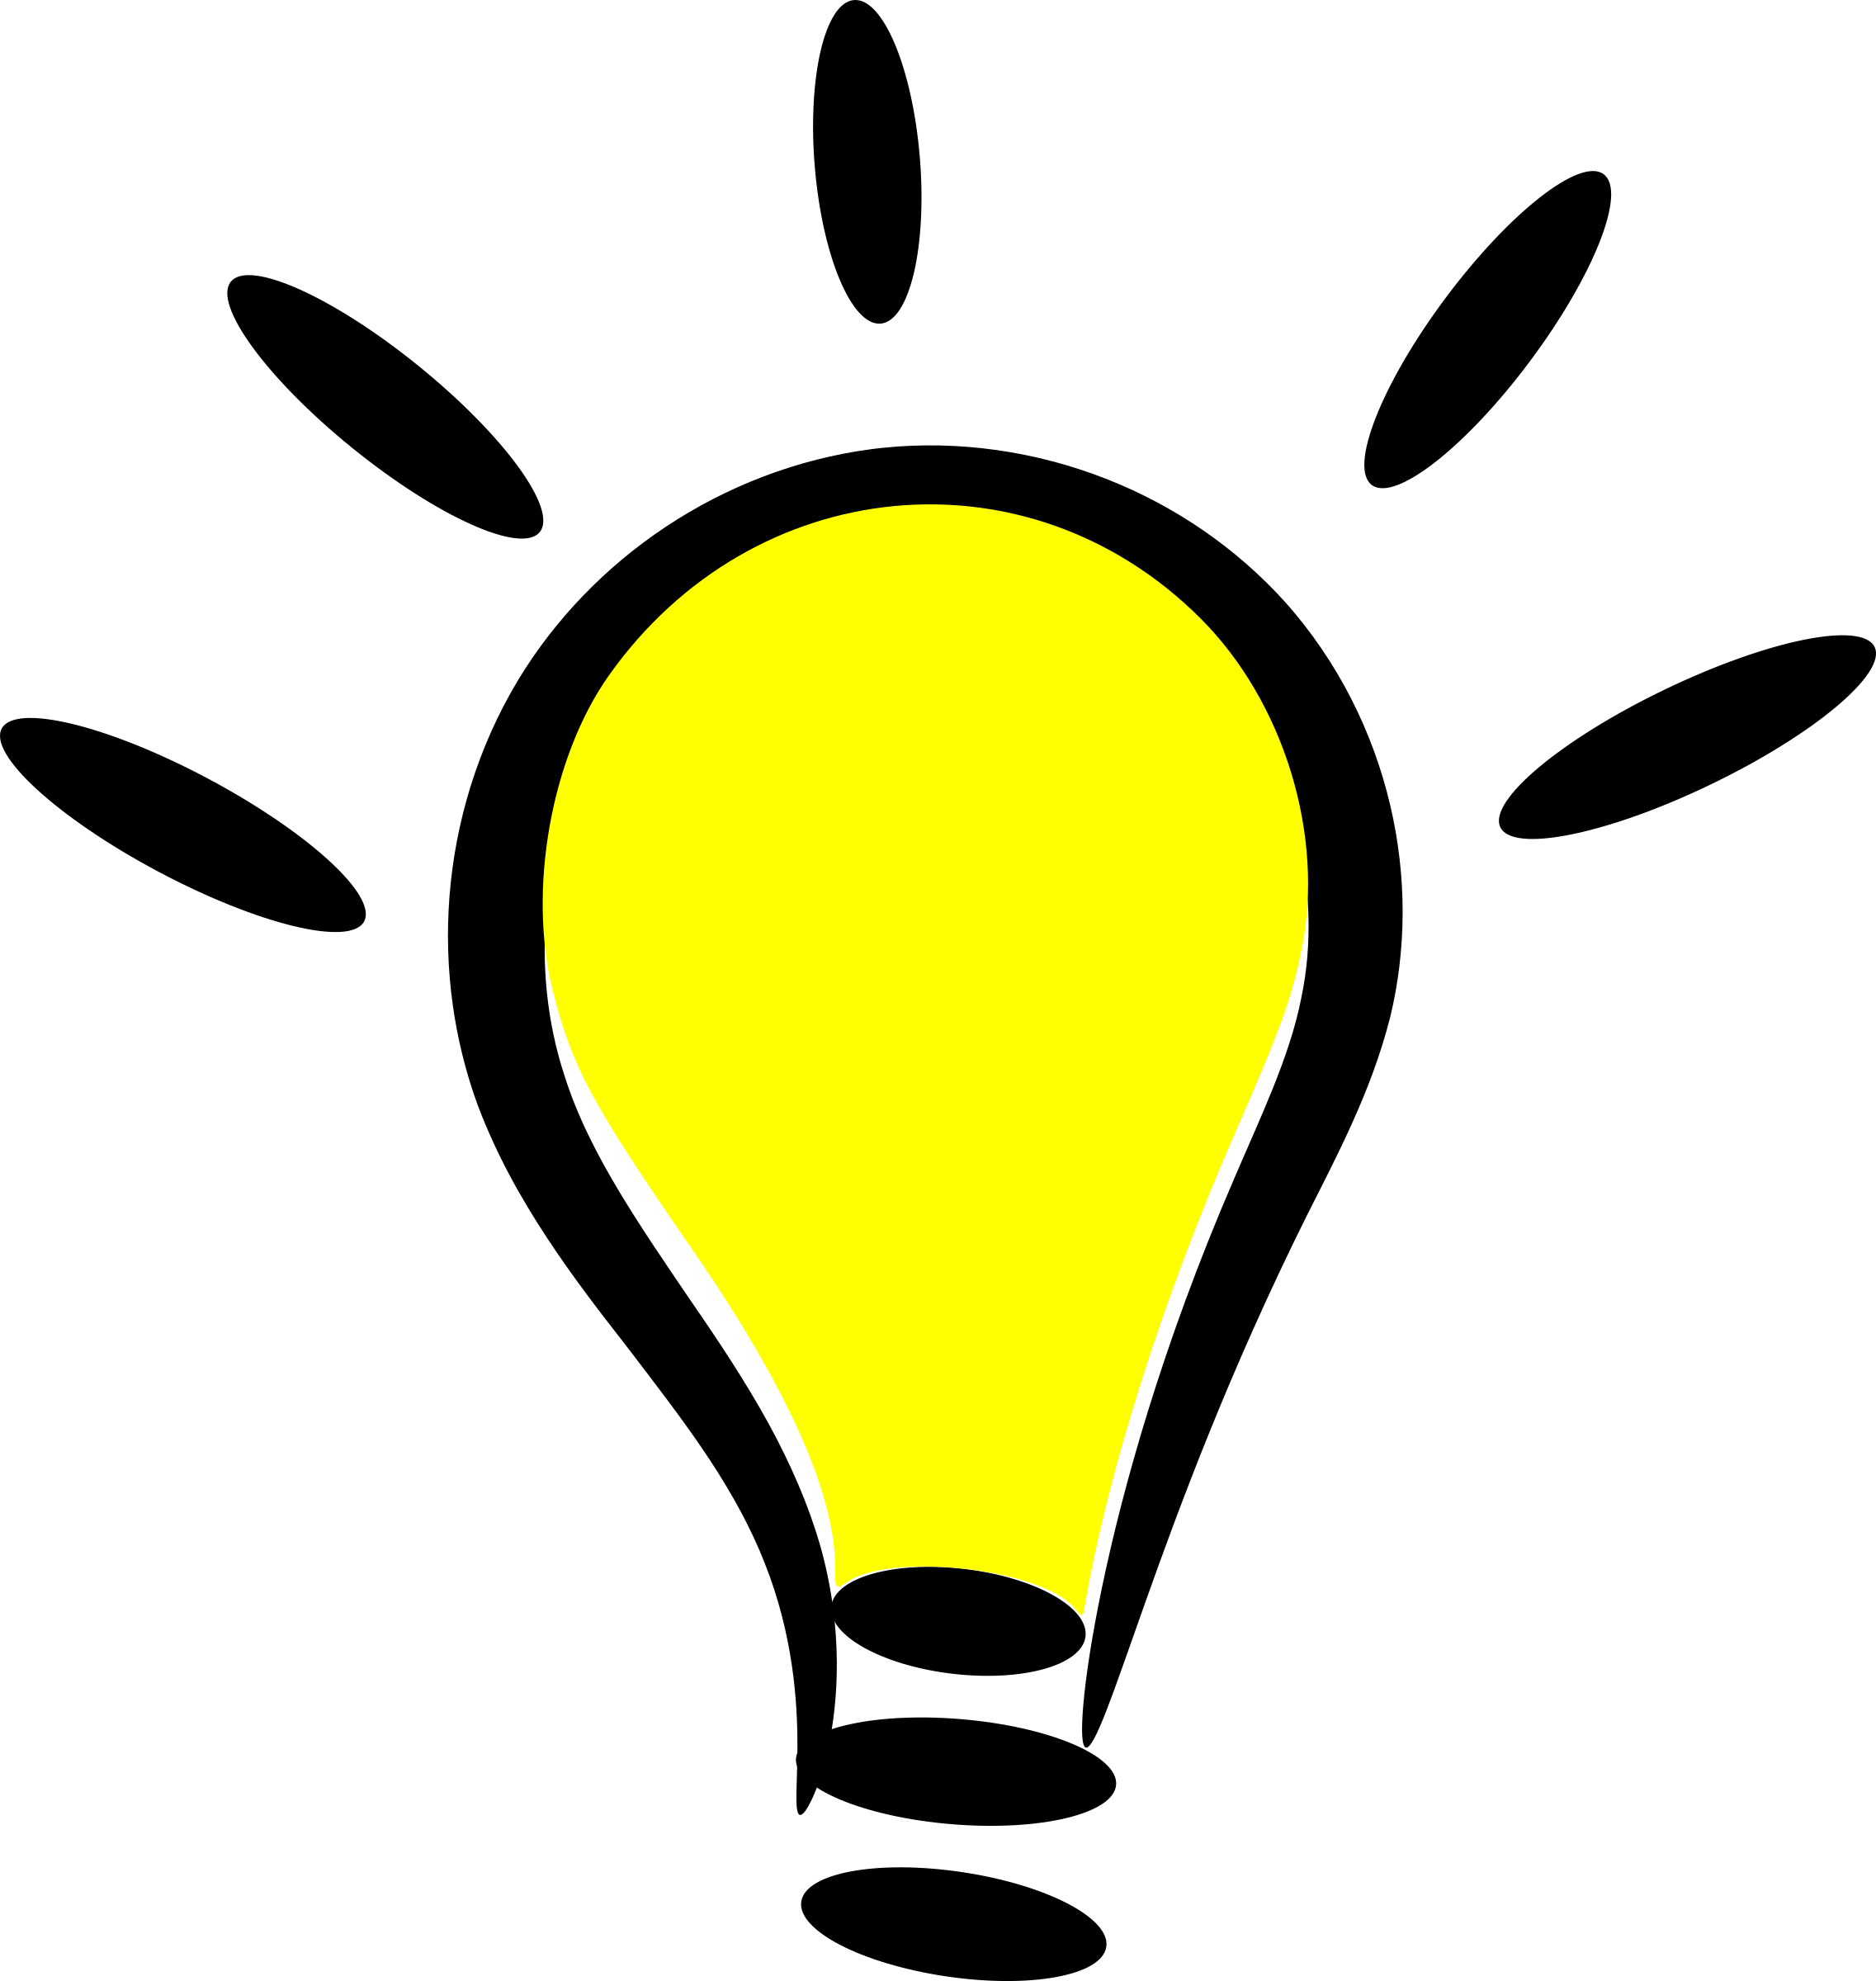 Free Light Bulb Clip Art Pictures - Clipartix